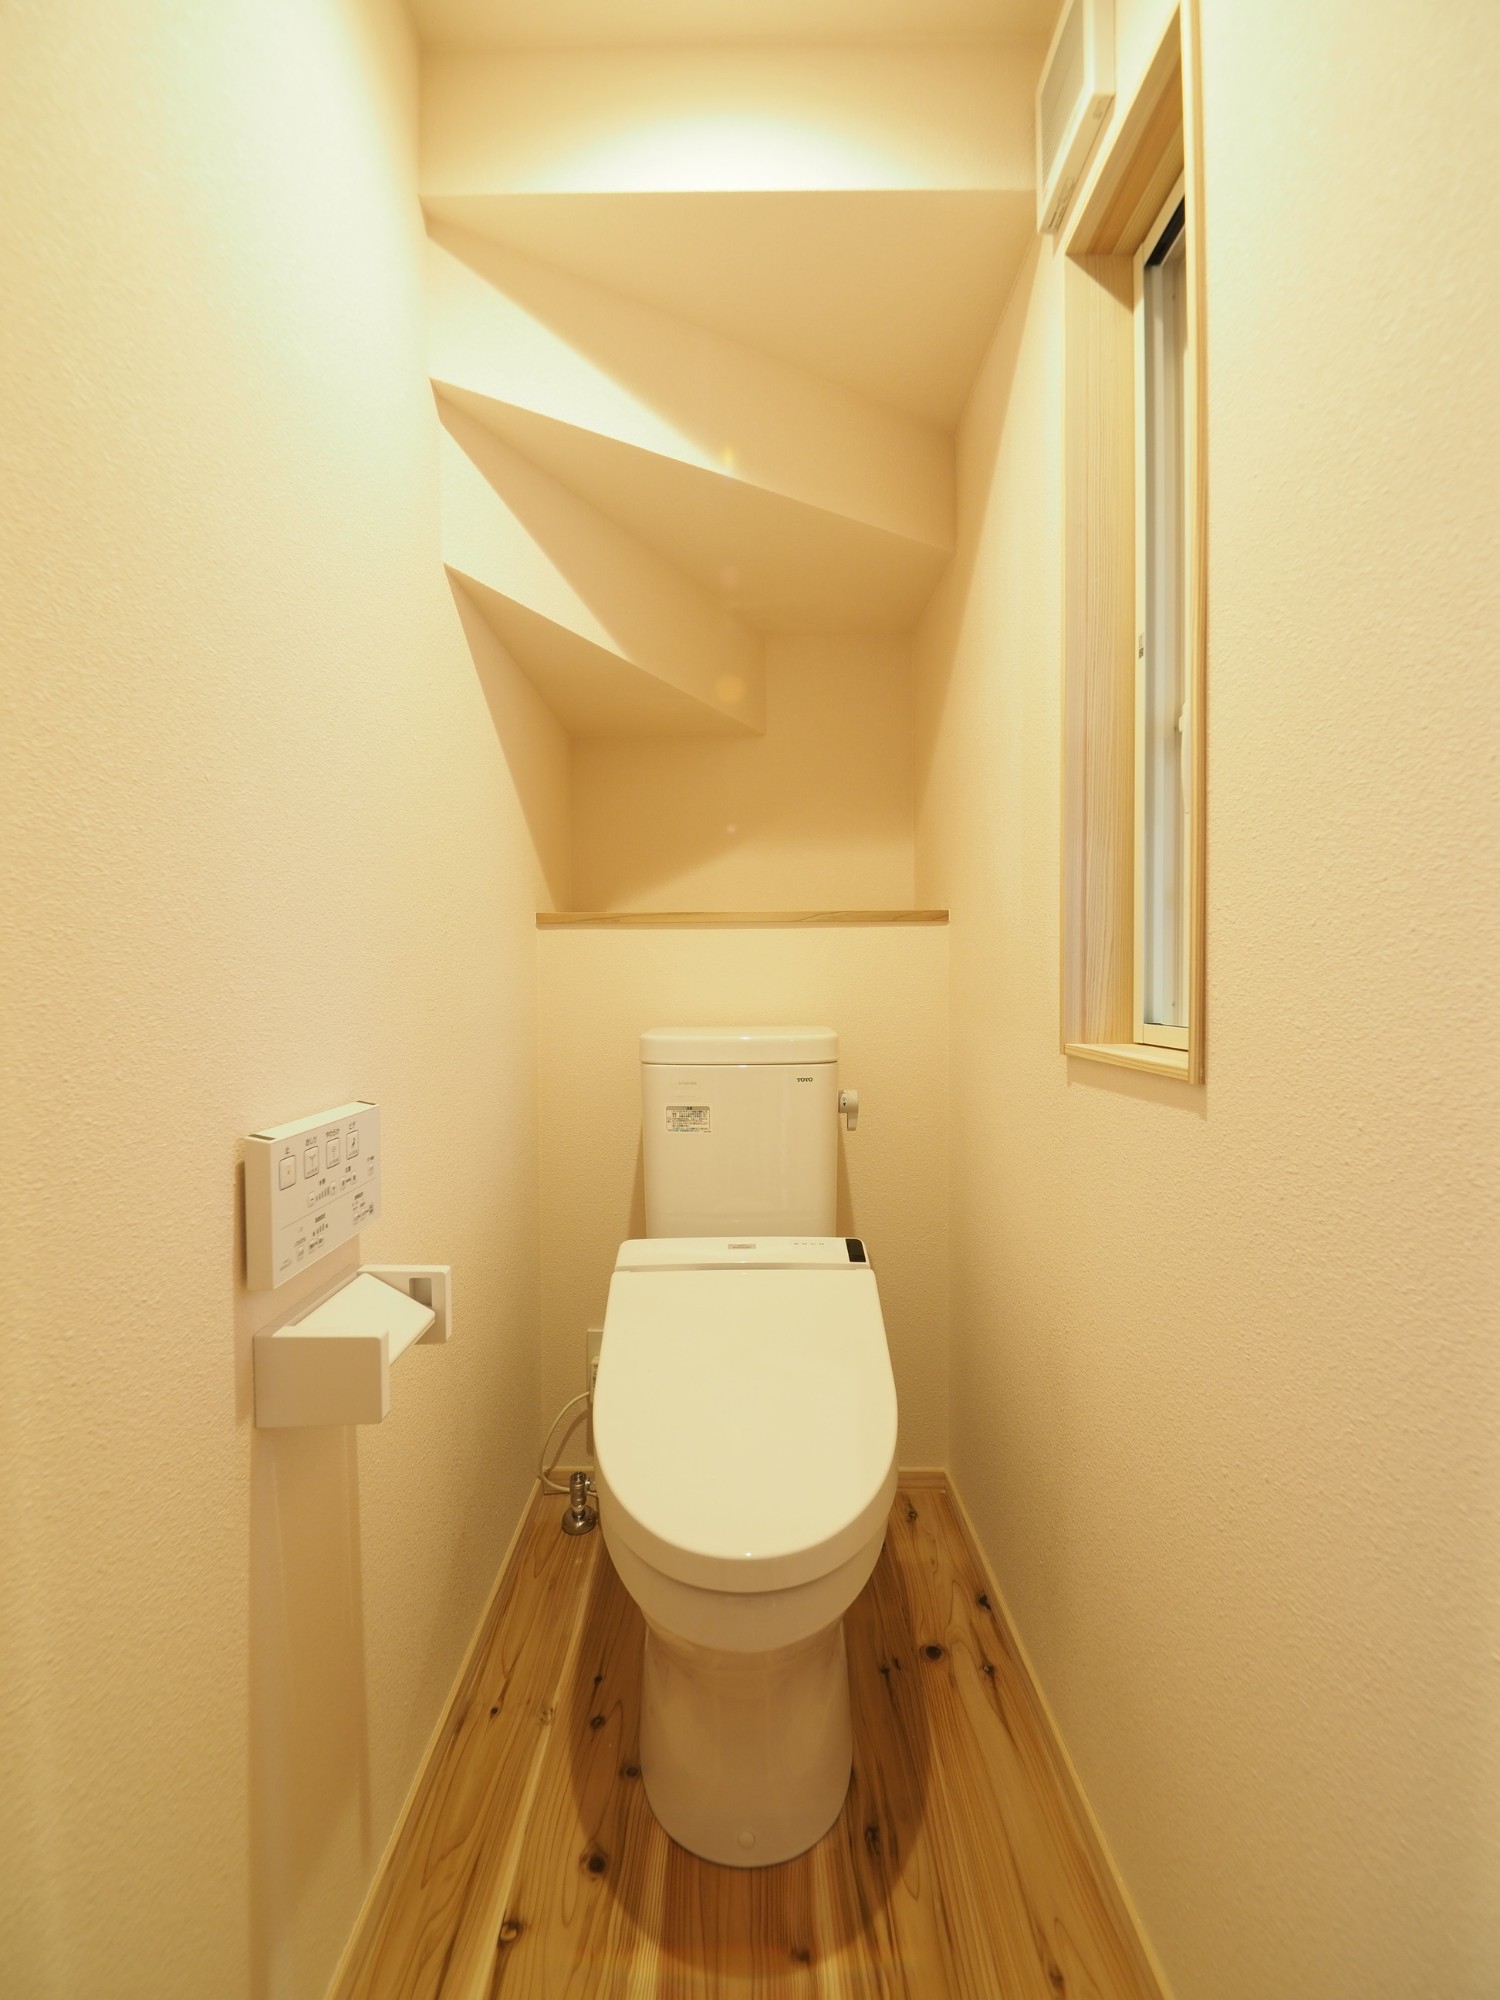 シンプル・ナチュラル・自然素材なトイレの実例写真